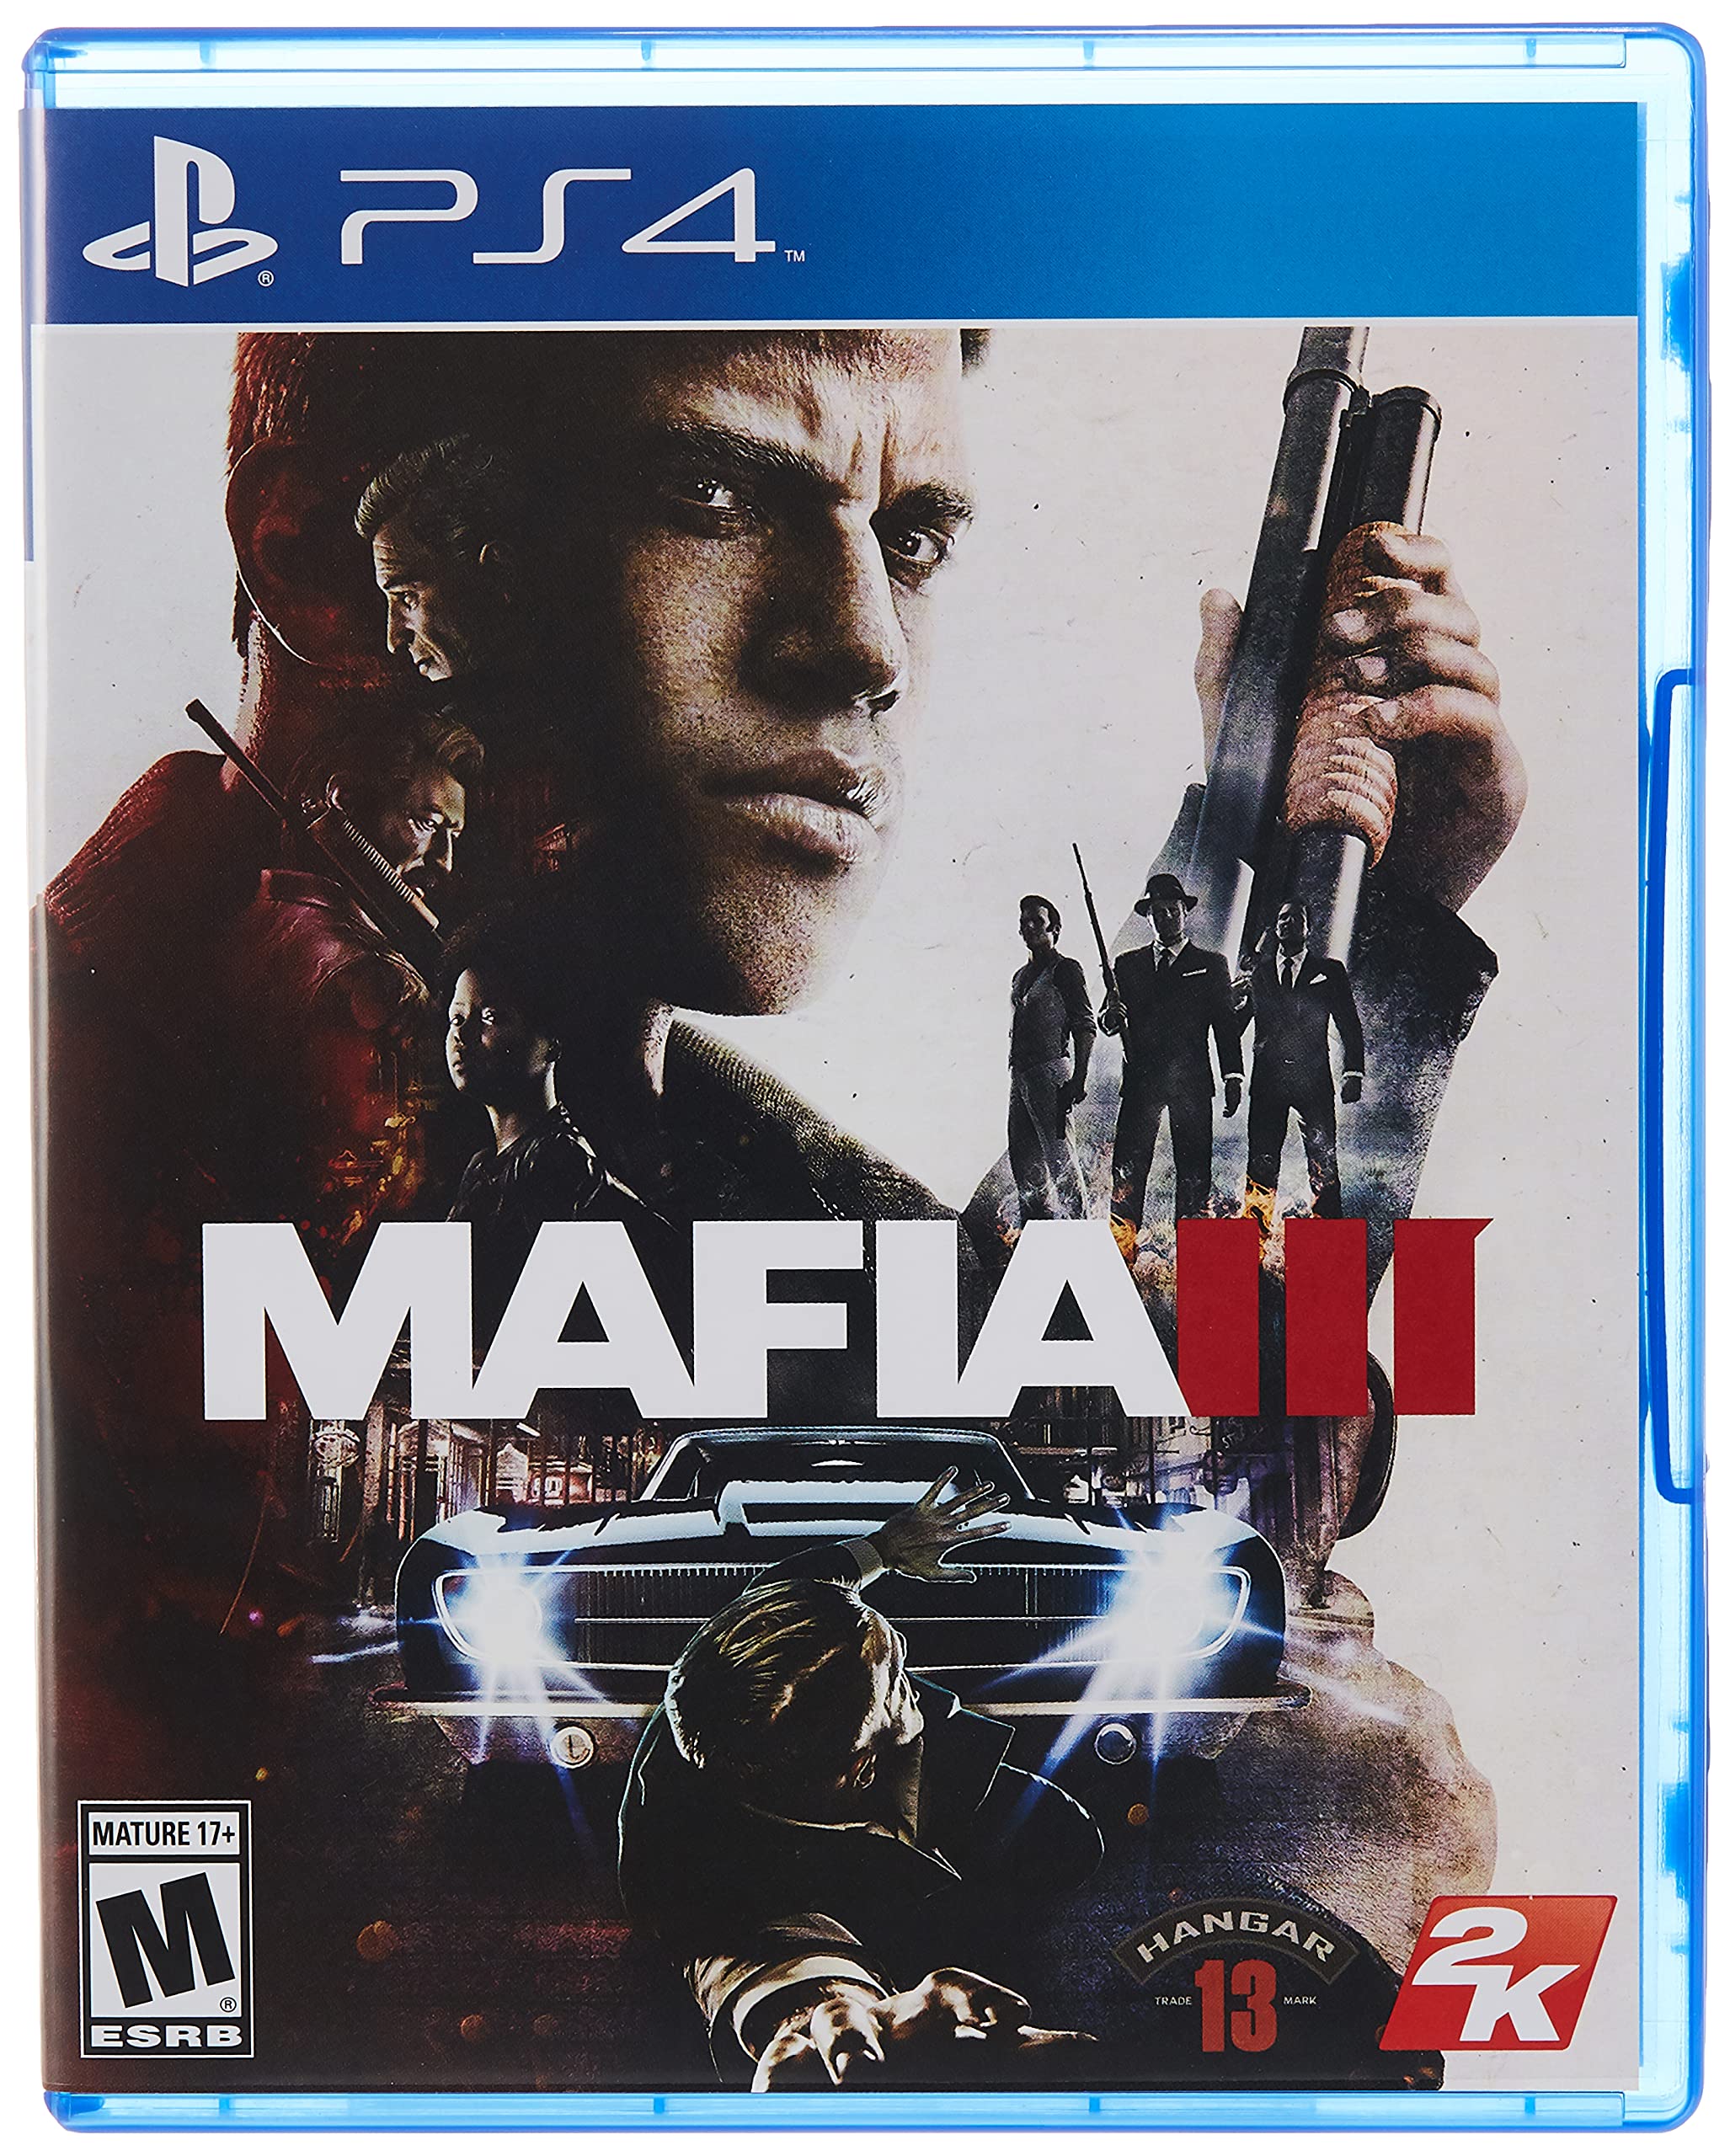 Playstation (Ps4) - (Ps5) Malta - BEJGH u TPARTIT!!, Mafia lll Assassin's  Creed Origins